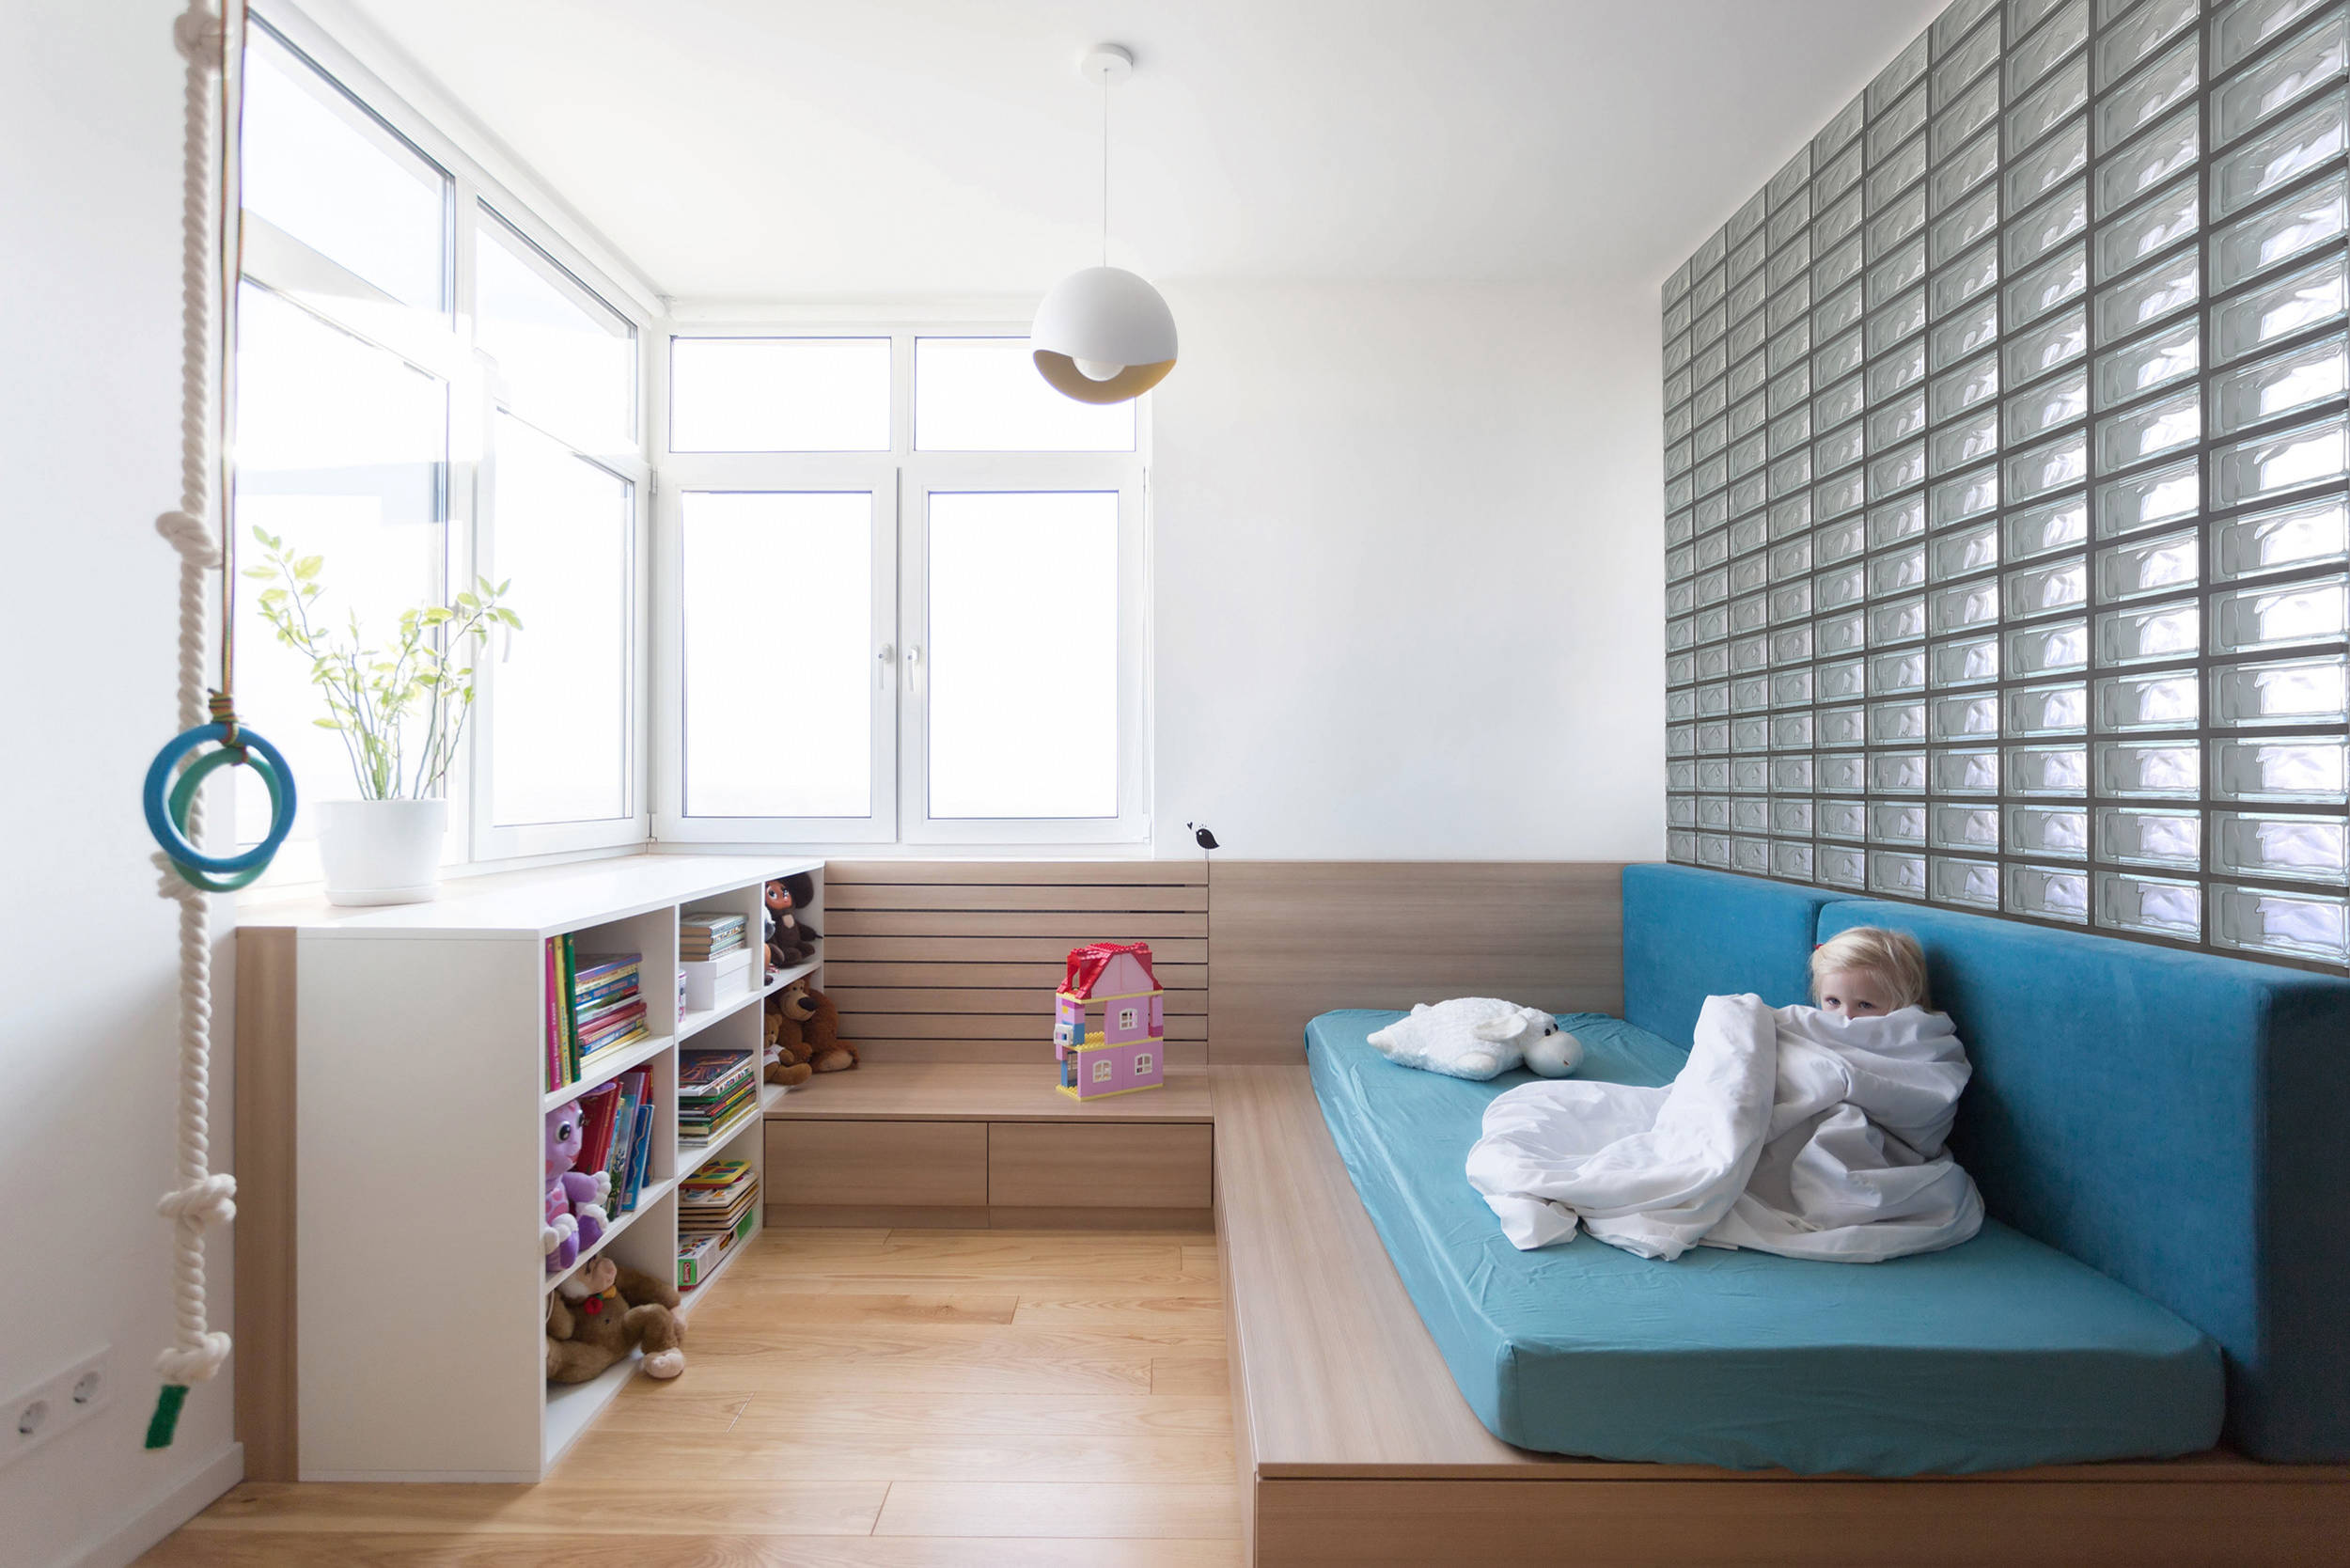 Однокомнатная квартира для семьи с ребенком: дизайн, зонирование, планировка – идеи и фото